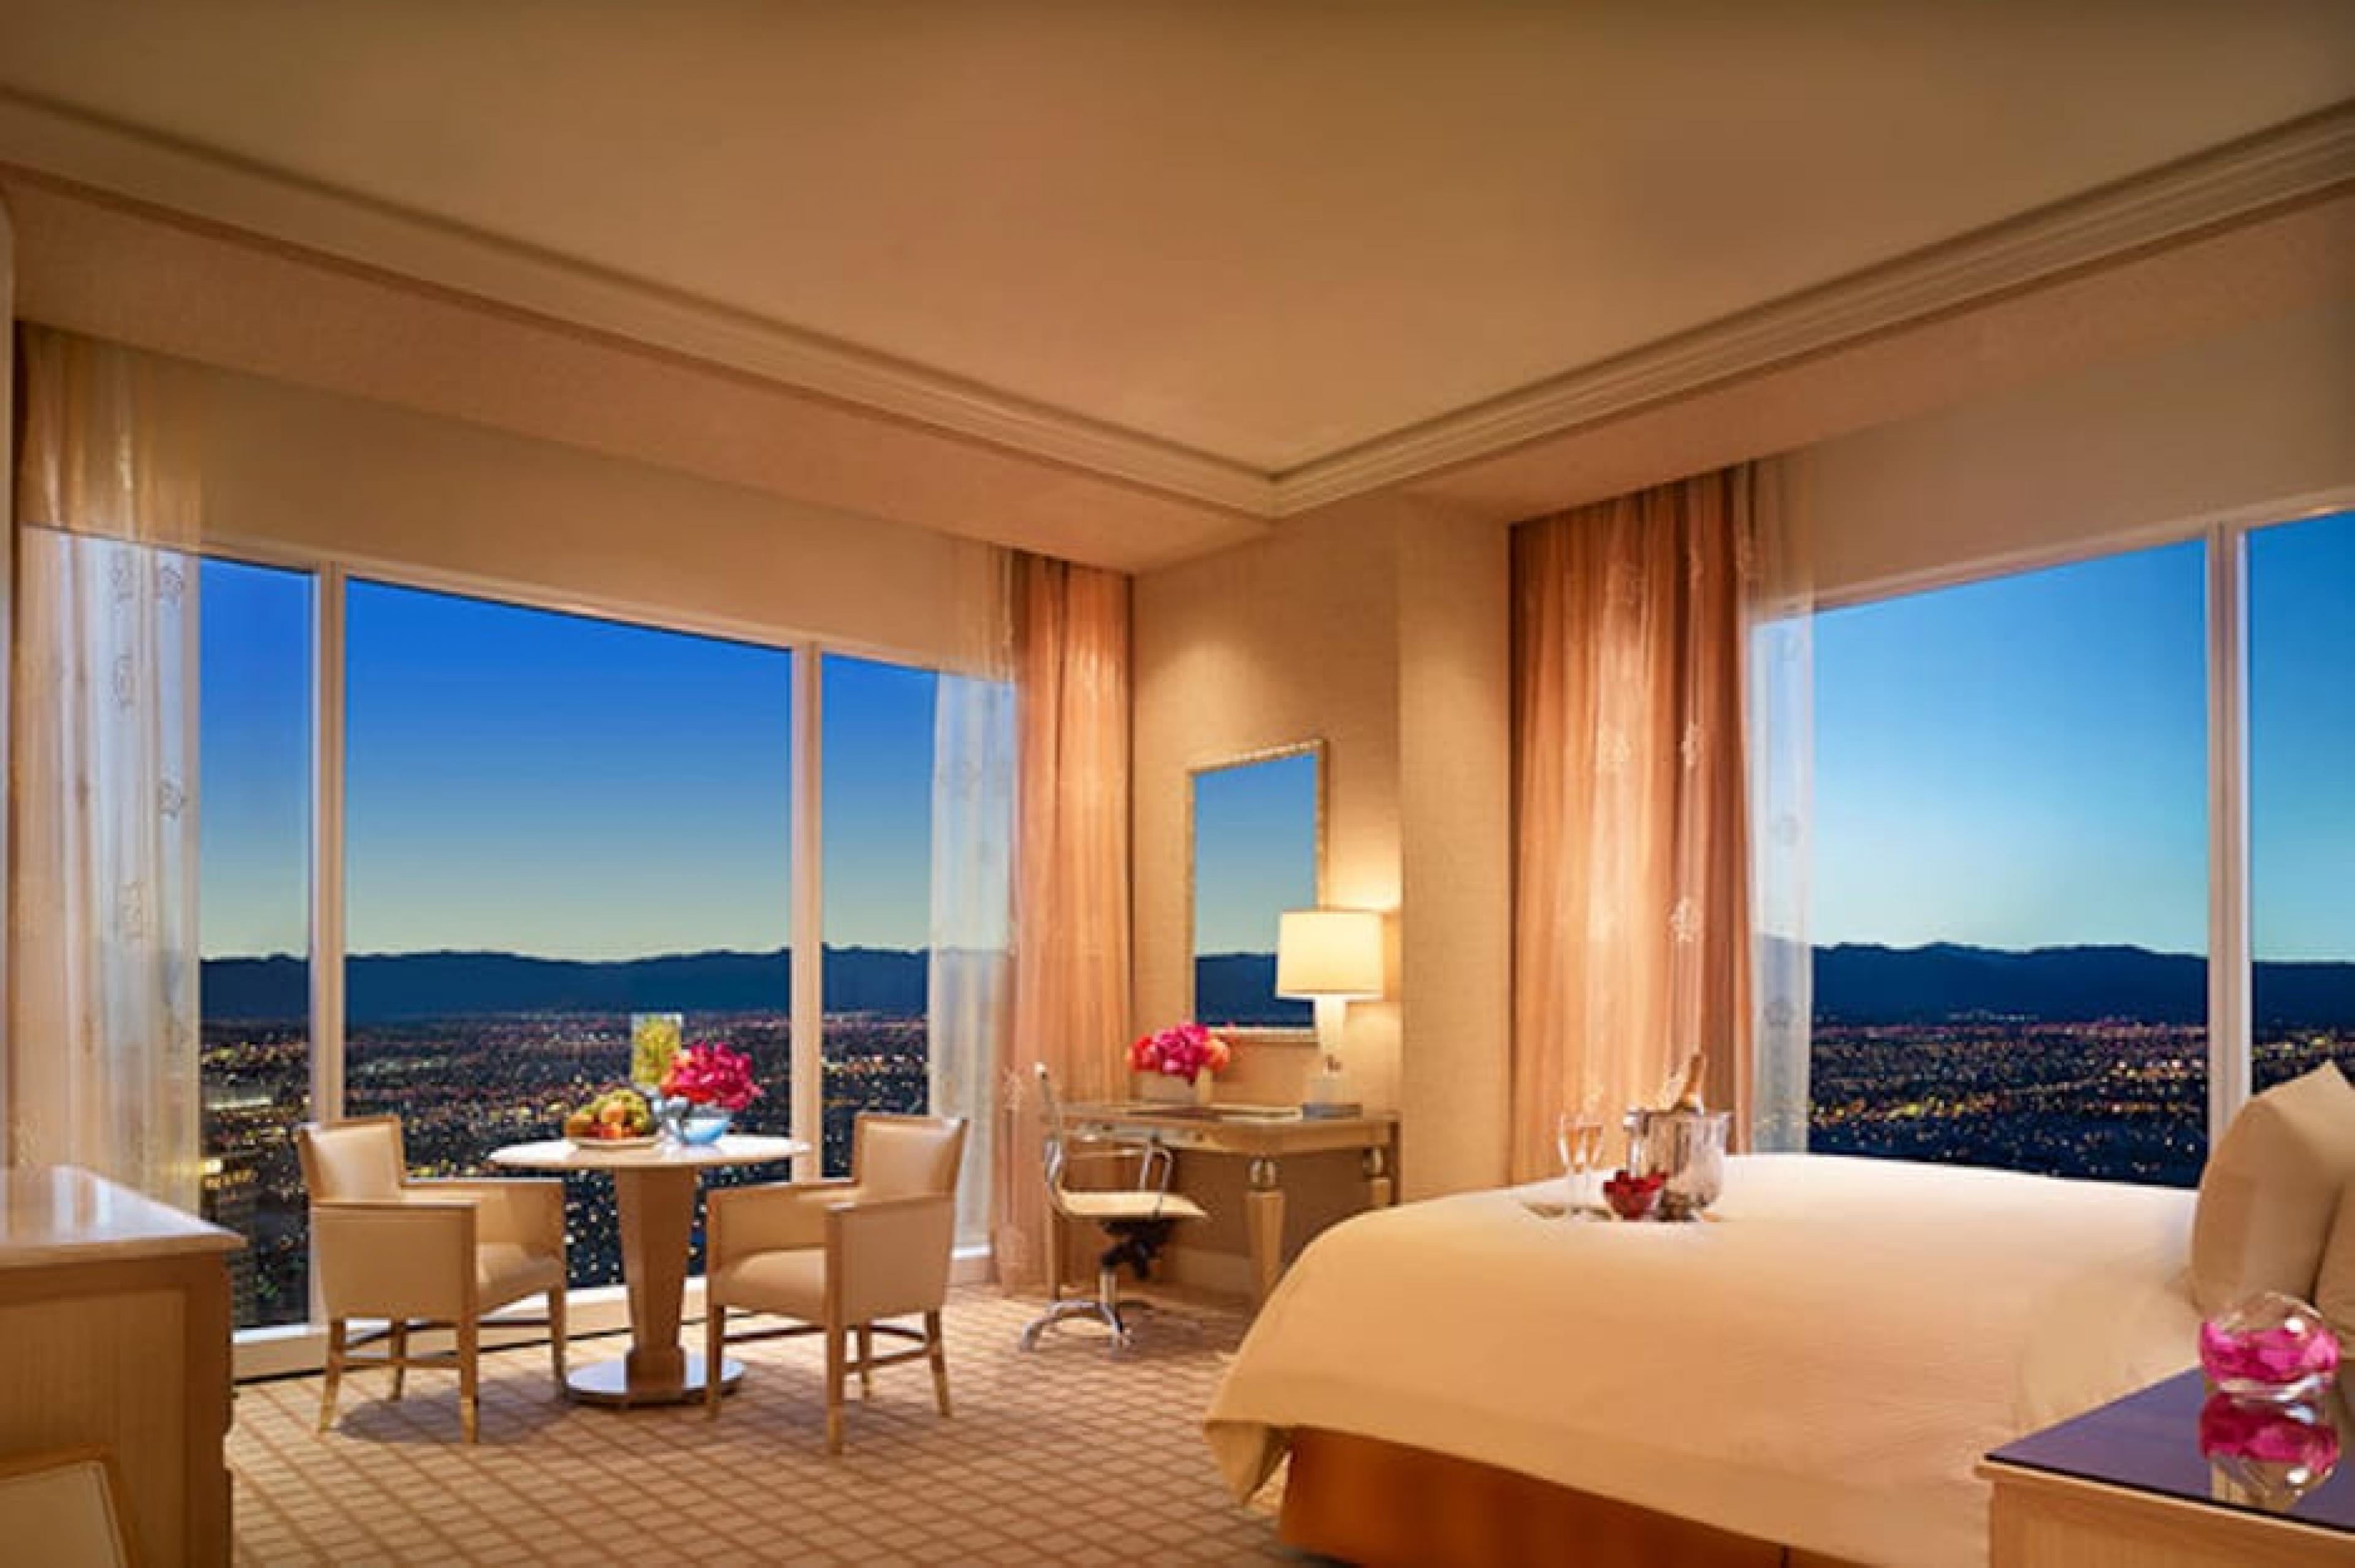 View from Bedroom at Wynn Las Vegas, Las Vegas, American West